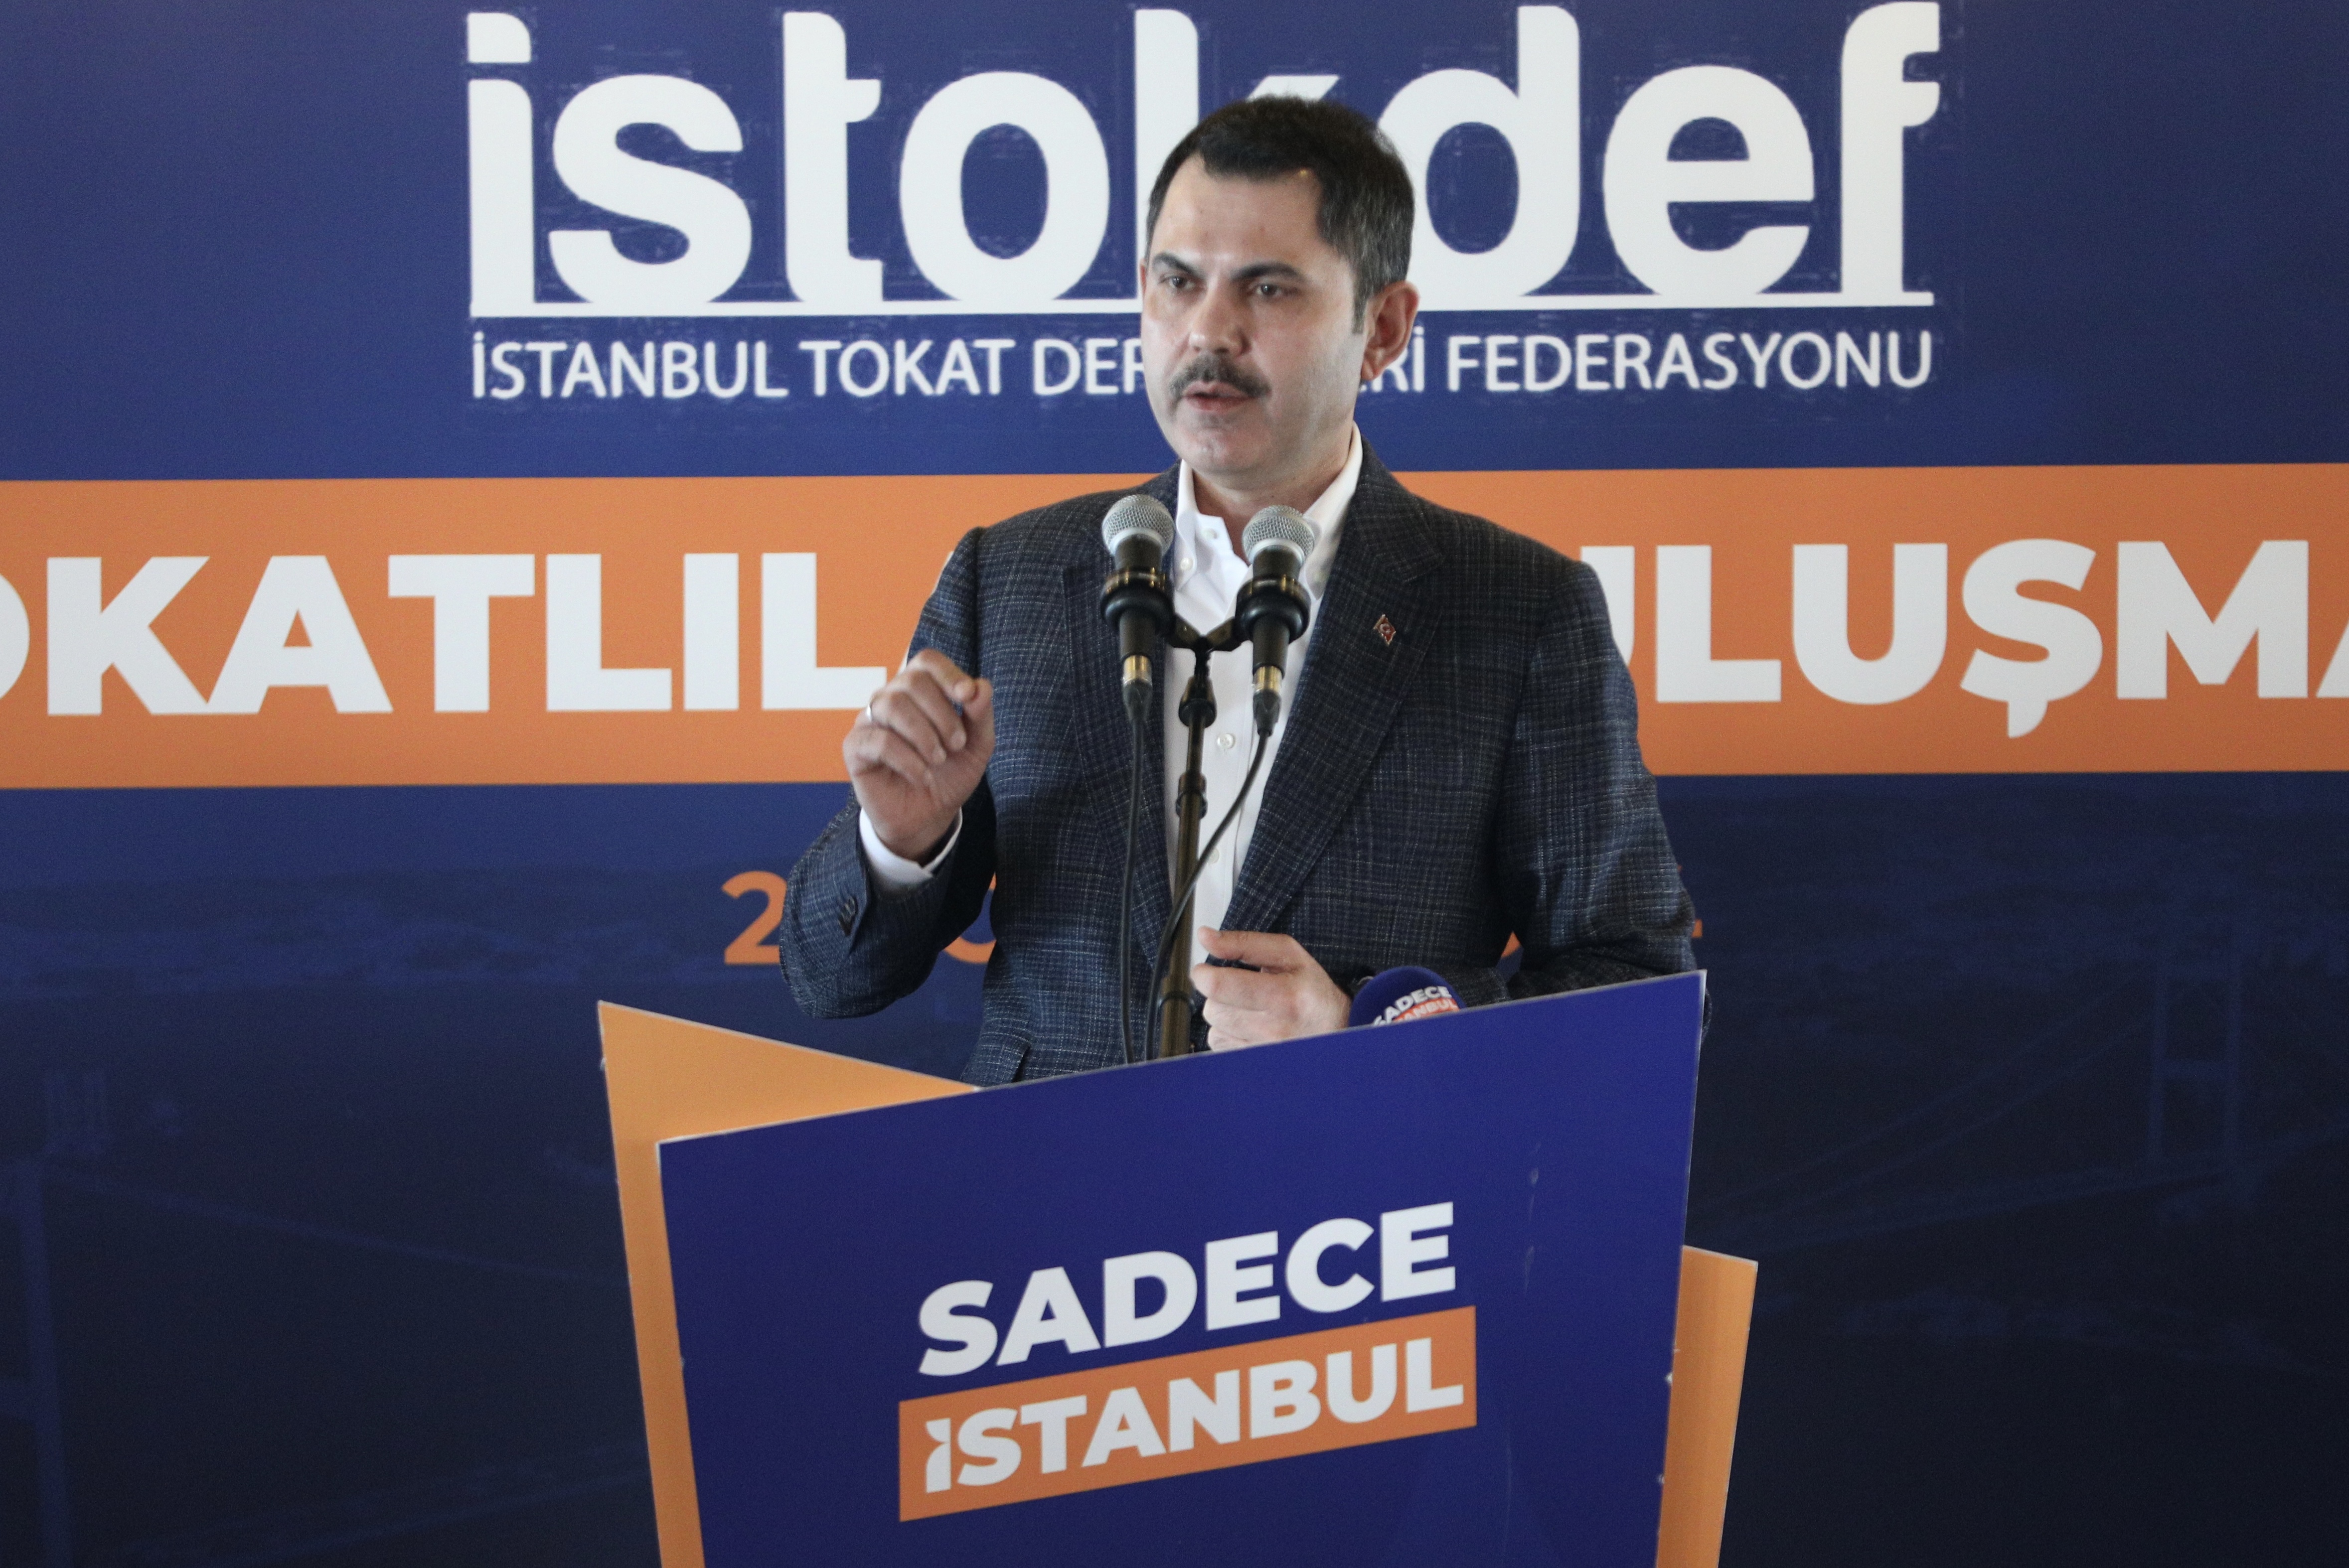 İBB Başkan Adayı Murat Kurum: “İstanbul afetlere hazır olana kadar çalışacağız”